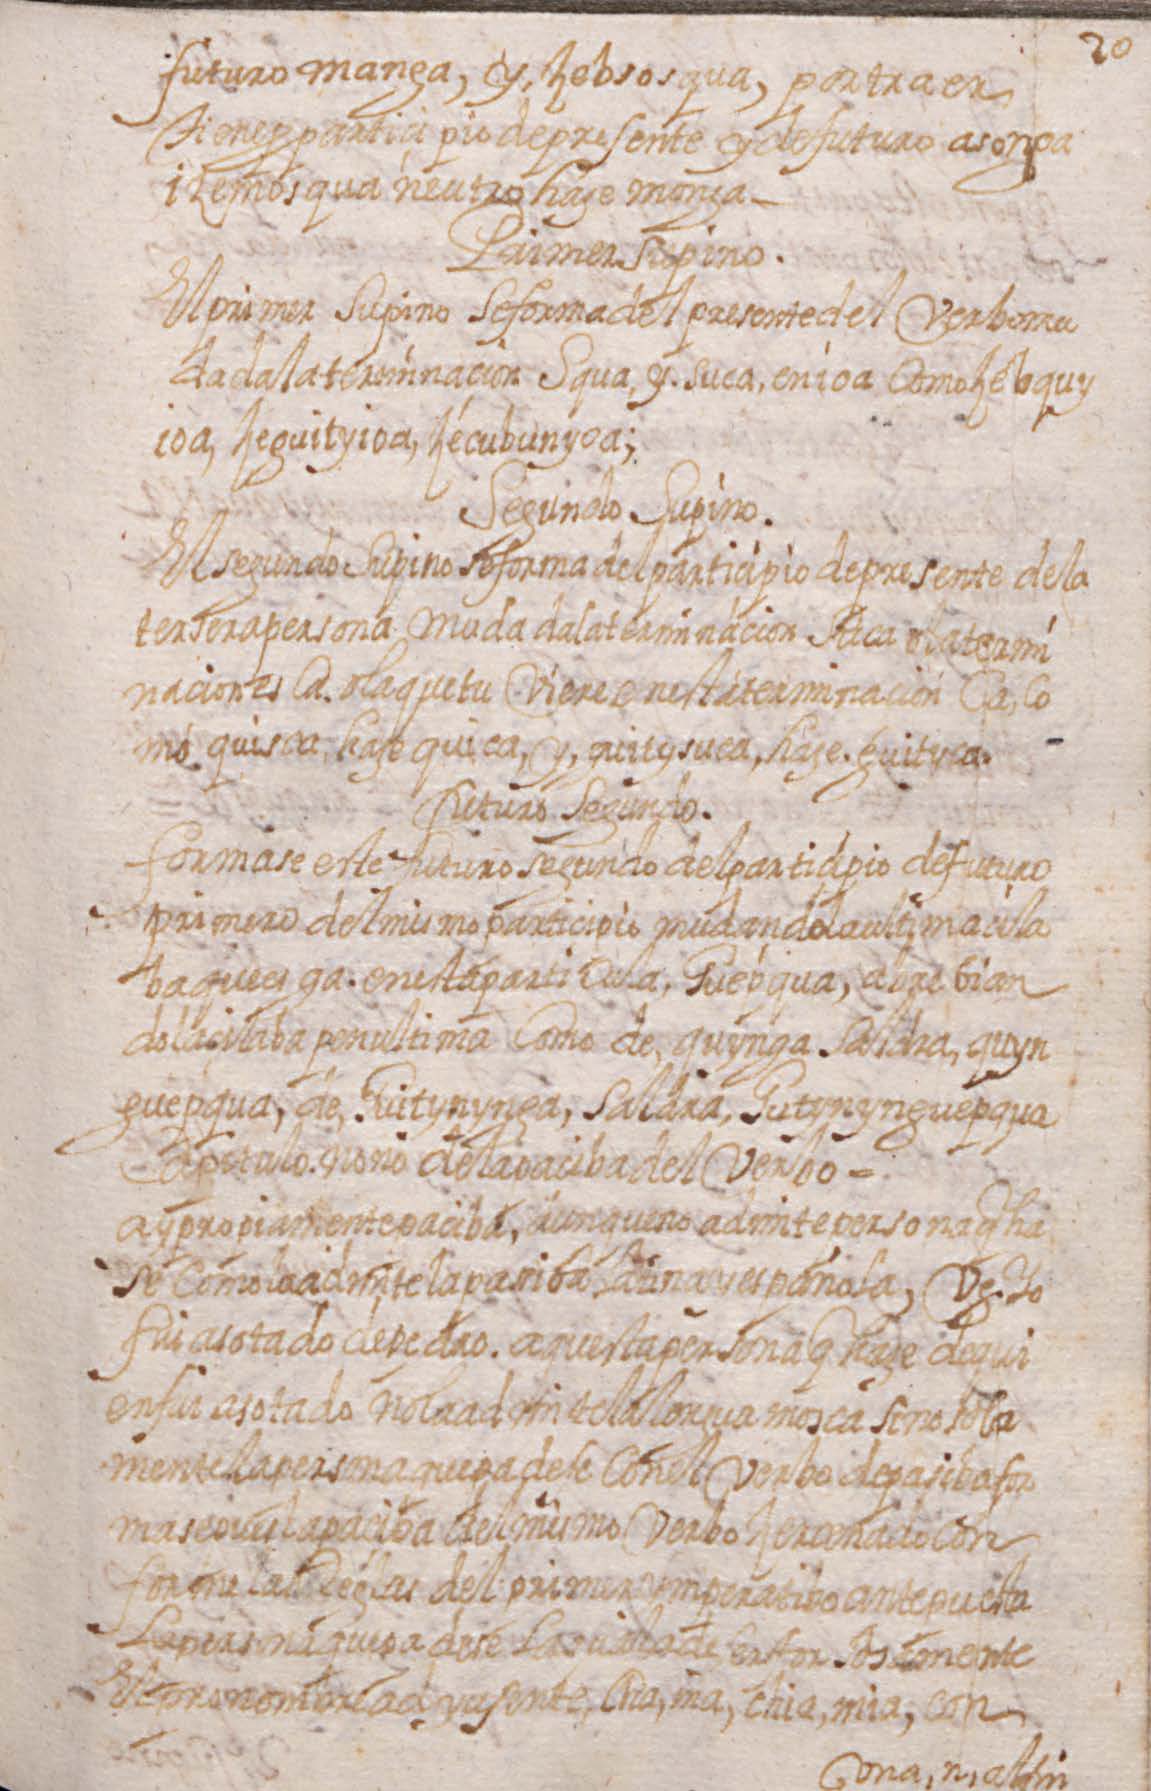 Manuscrito 158 BNC Gramatica - fol 20r.jpg